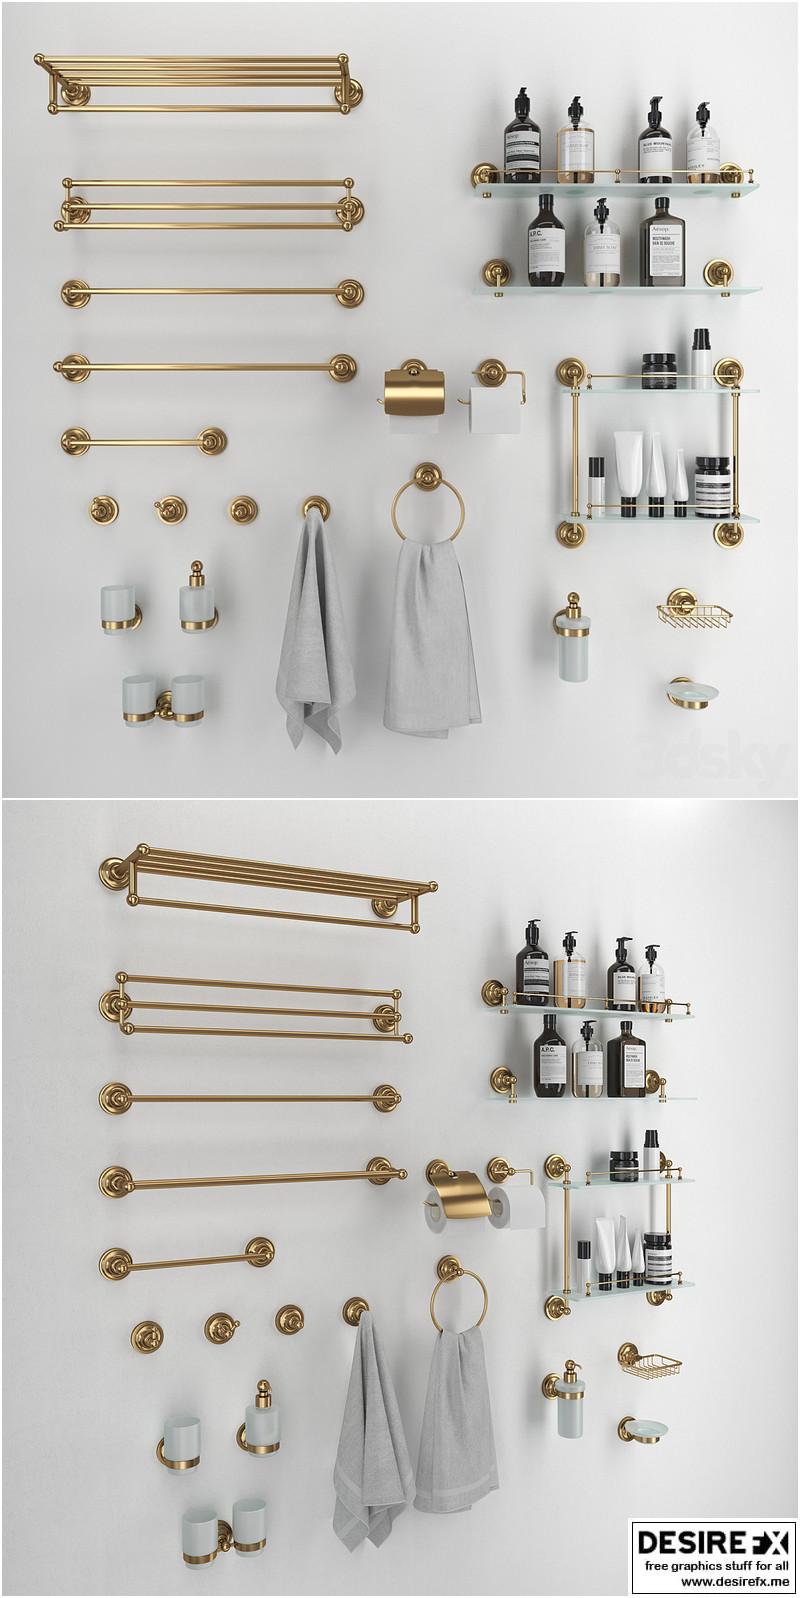 Desire FX 3d models  Bemeta Retro bathroom accessories – 3D Model